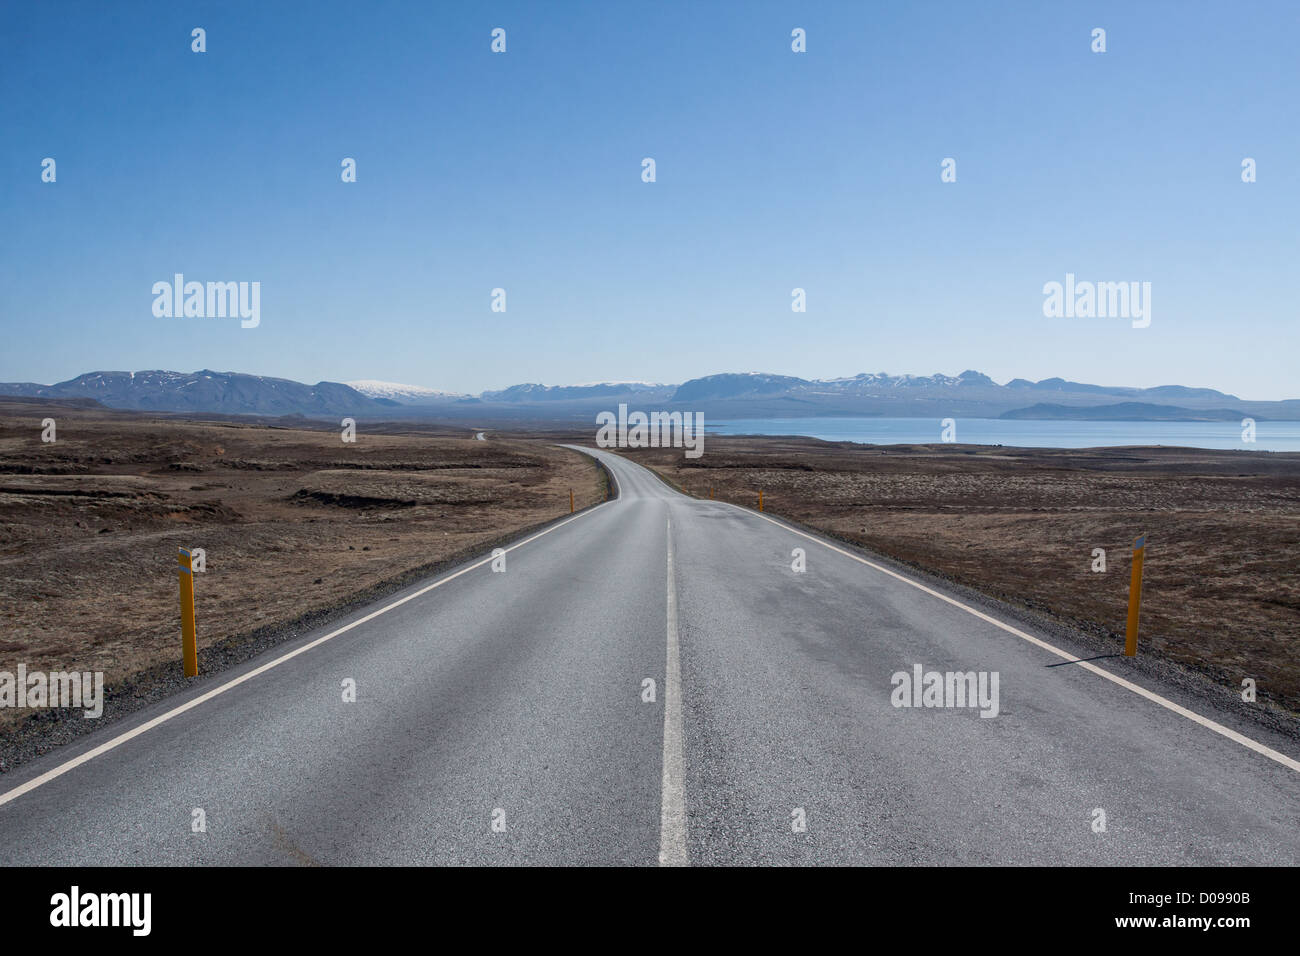 Deserta strada islandese con lago THINGVALLAVATN sulla regione destra del cerchio d'oro dell'Islanda Foto Stock